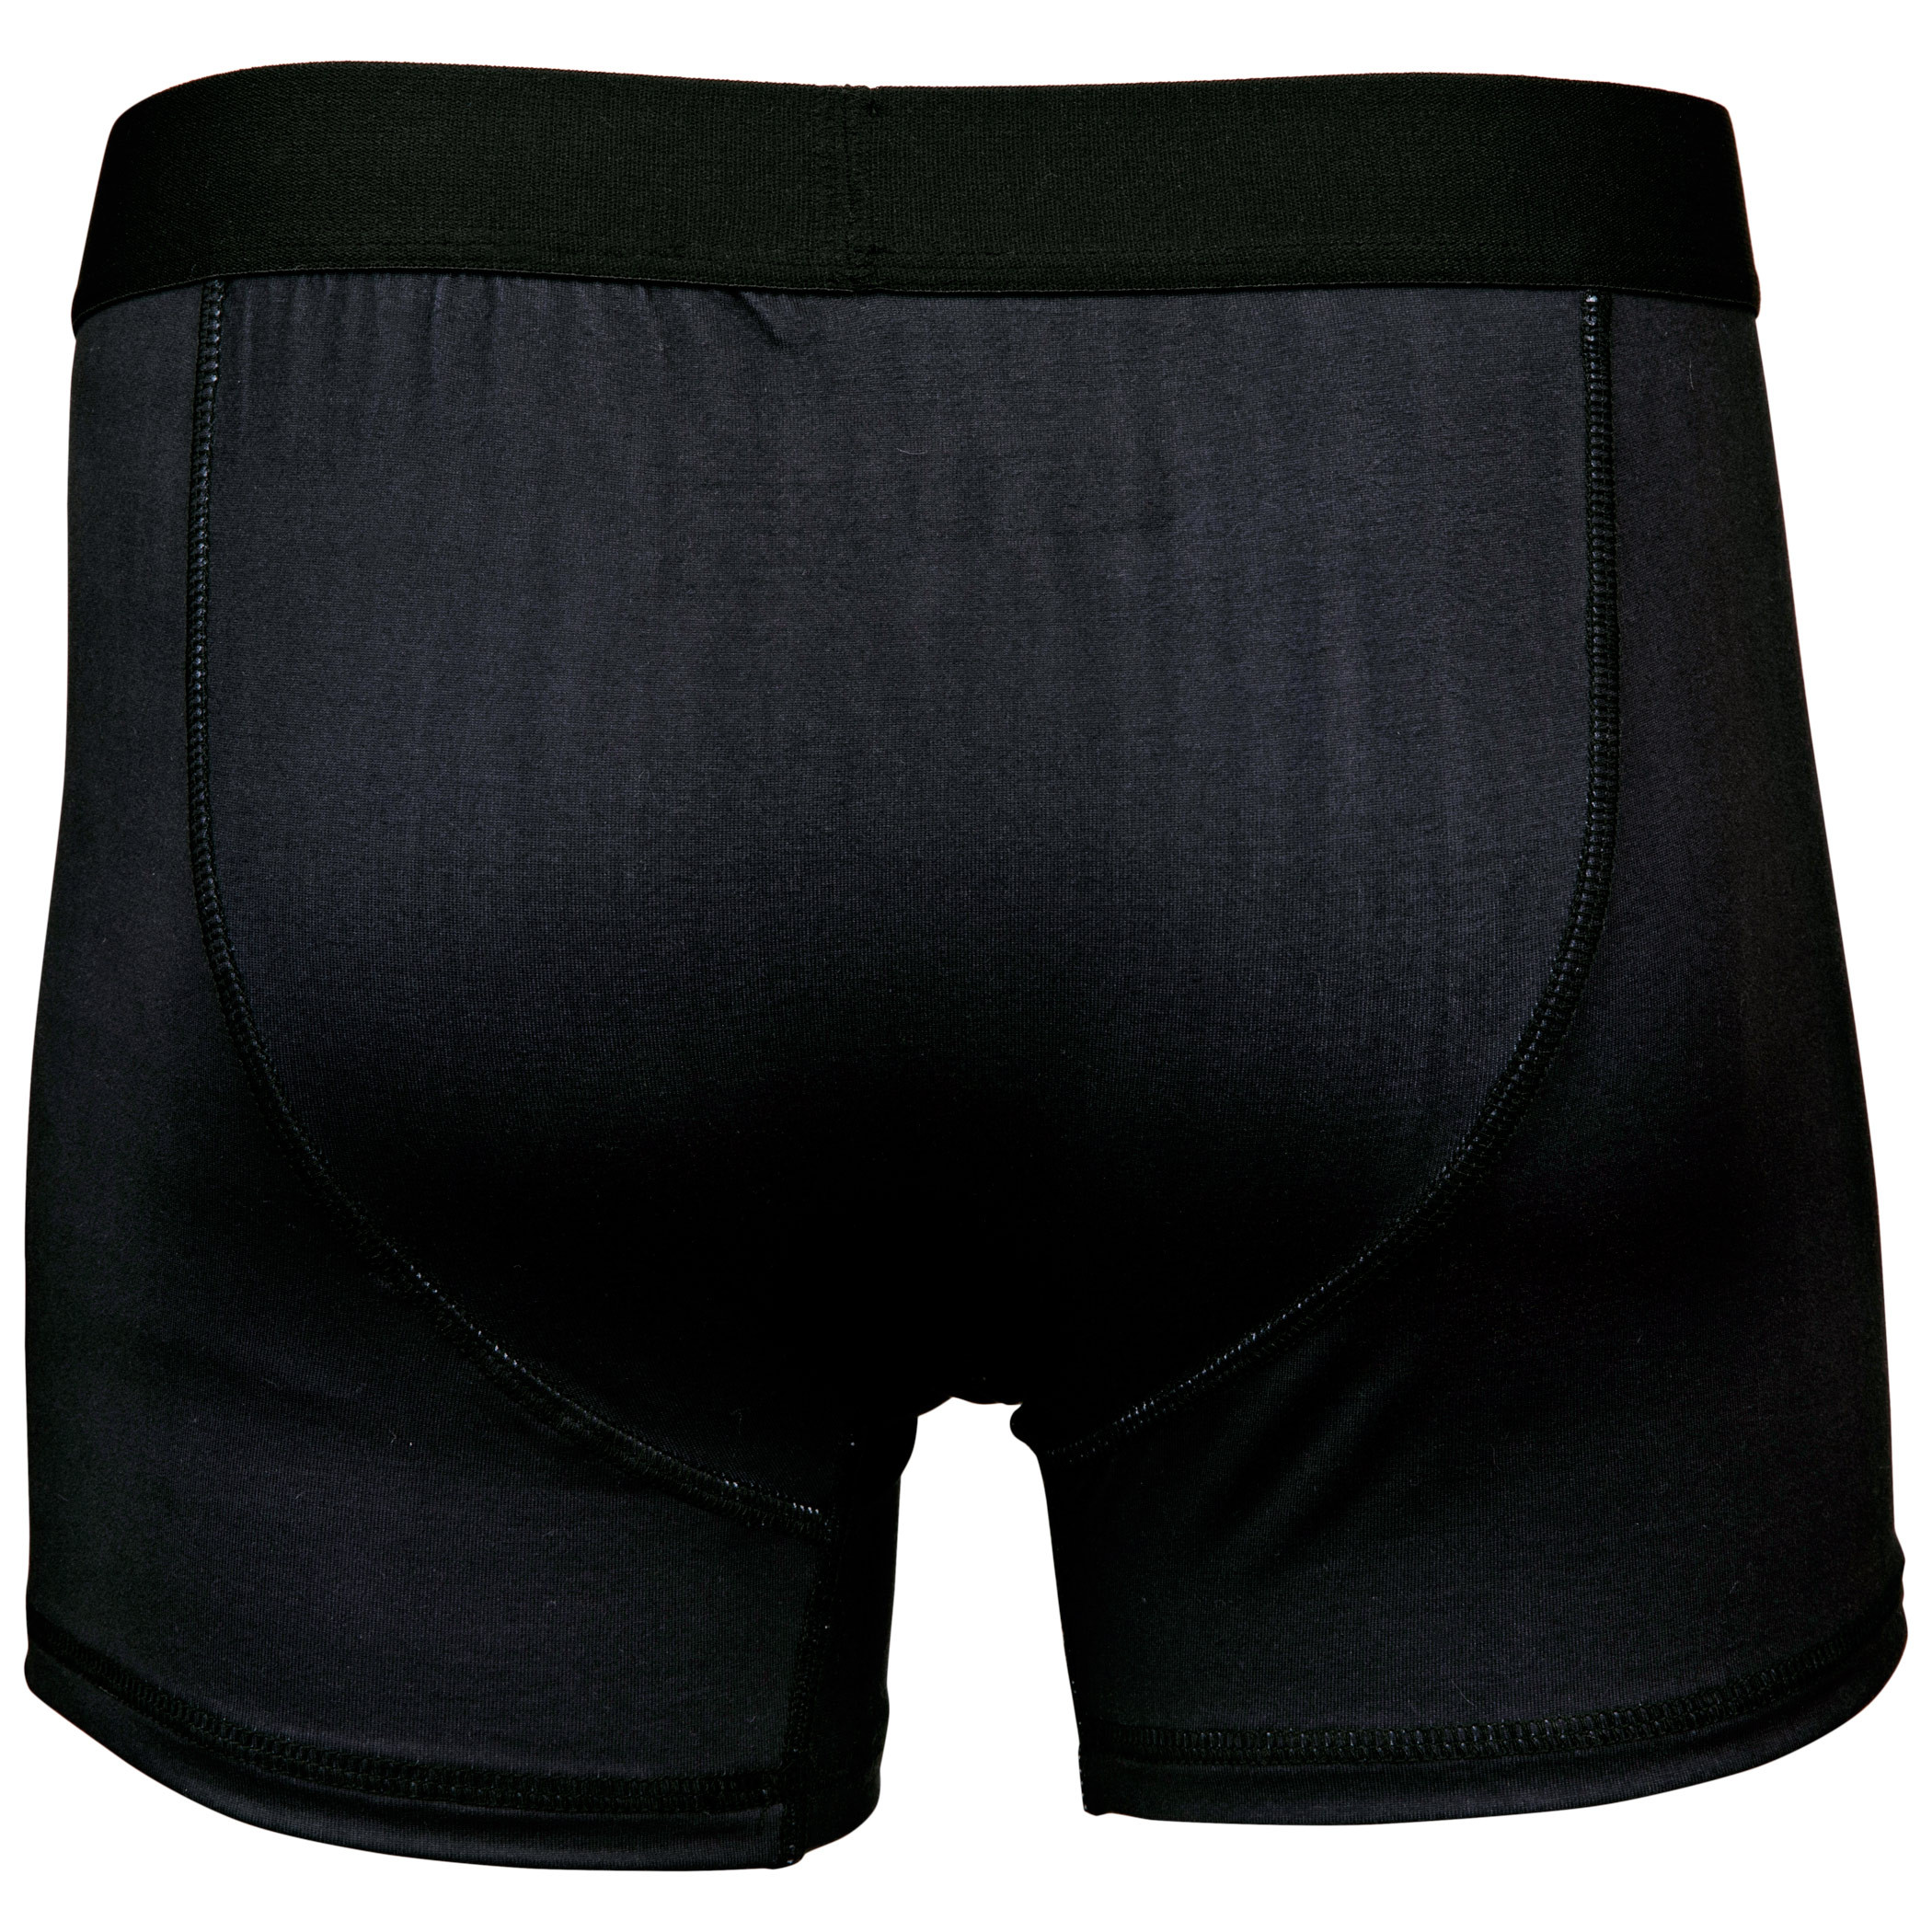 Batman Classic Men's Underwear Boxer Briefs- XLarge (40-42) Black, Black,  X-Large